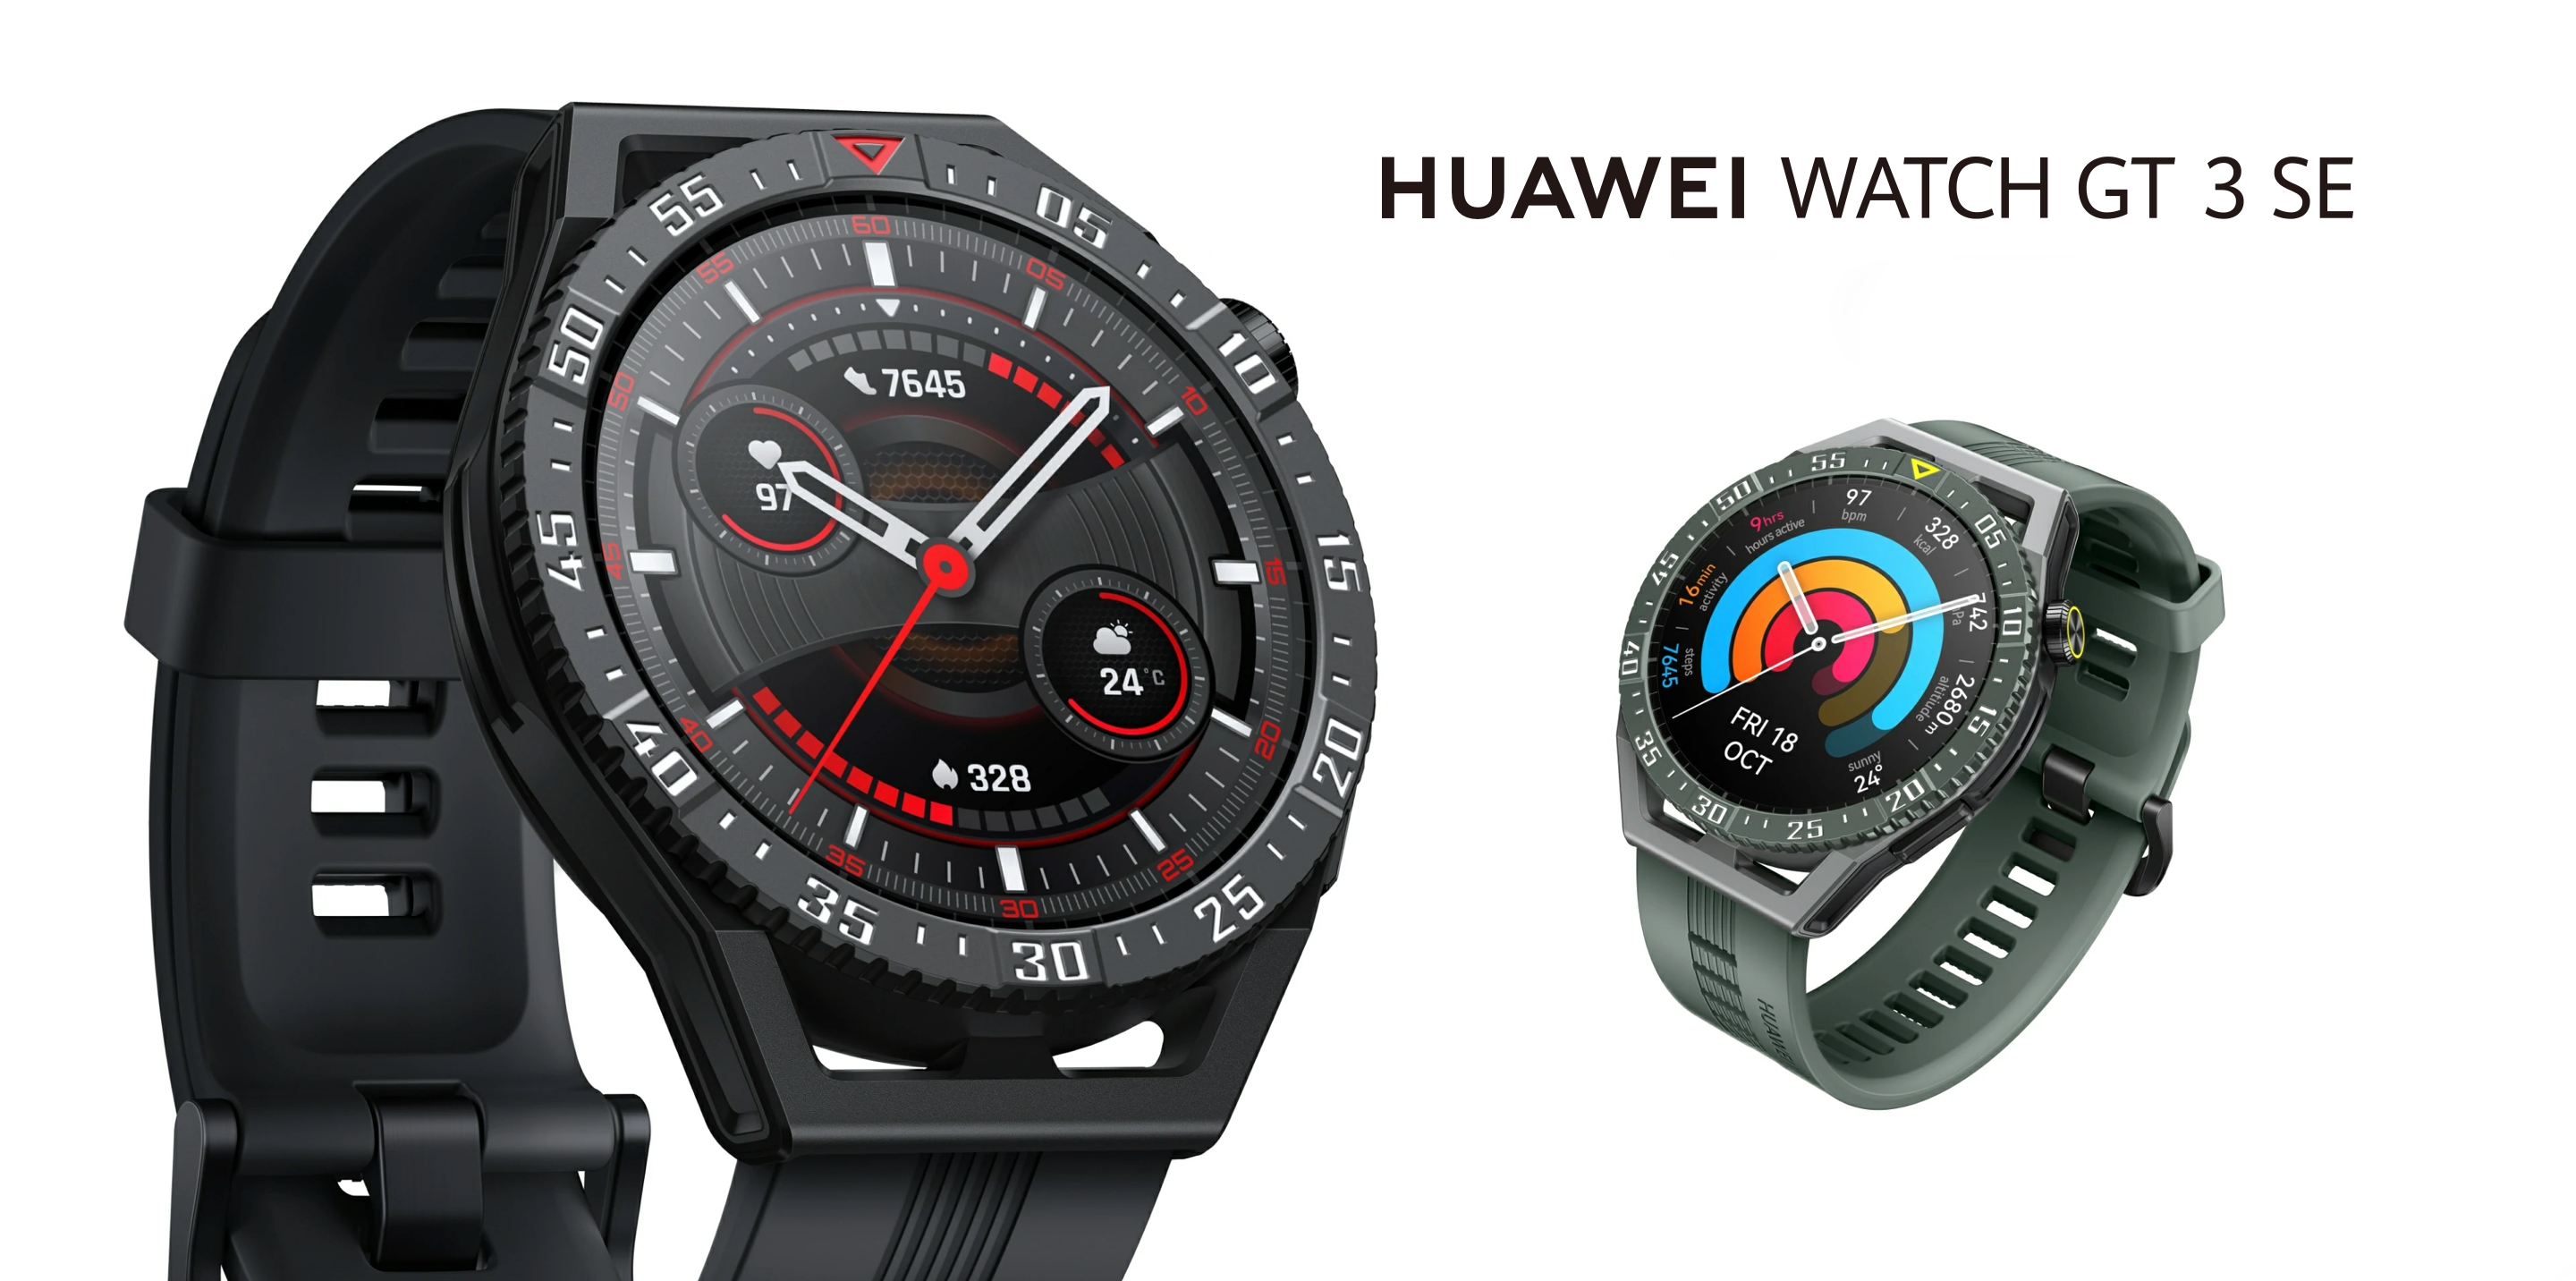 Huawei Watch GT 3 SE: смарт-годинник для глобального ринку з AMOLED-екраном, захистом від води, датчиком SpO2 та автономністю до 14 днів